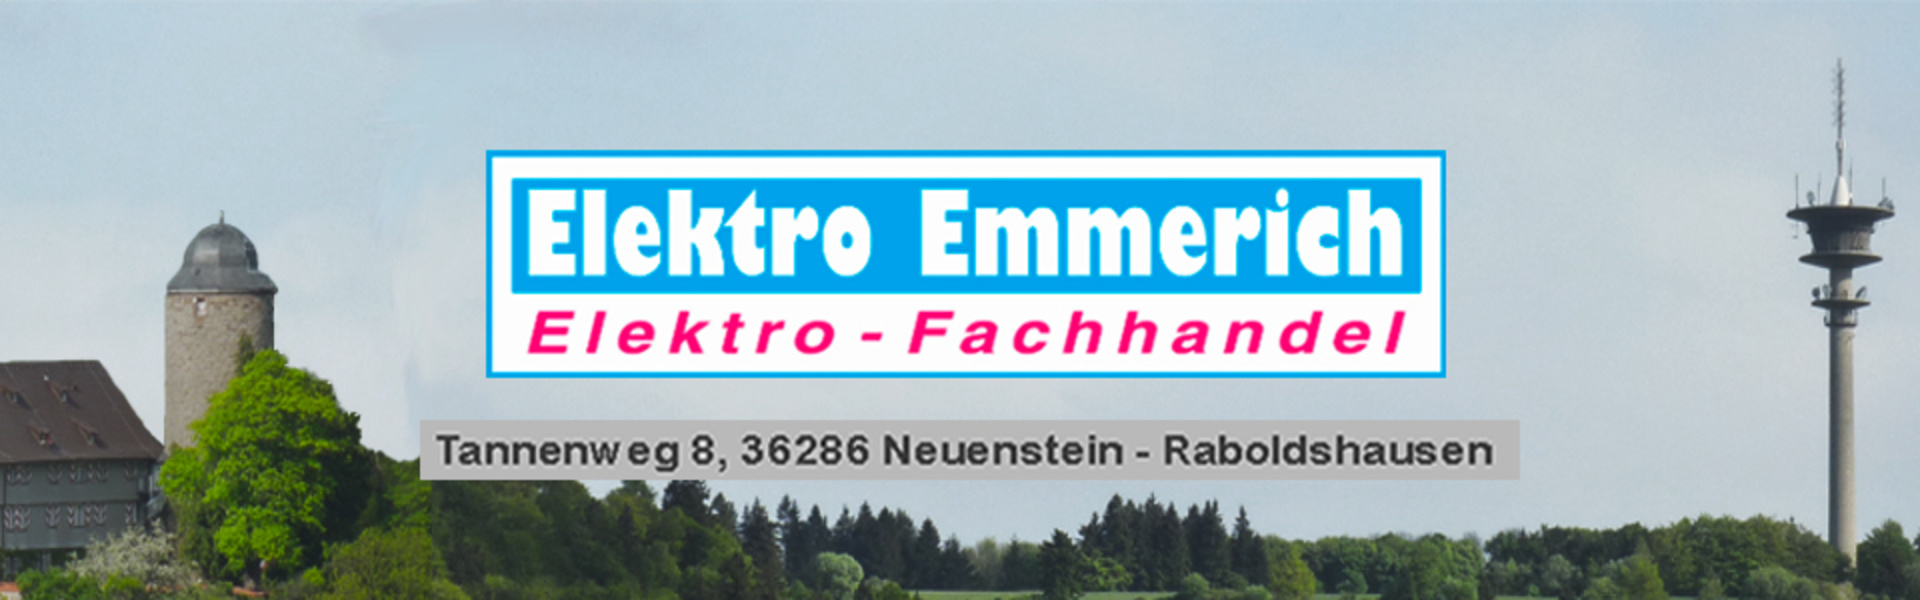 Elektro Emmerich GmbH in Neuenstein Raboldshausen